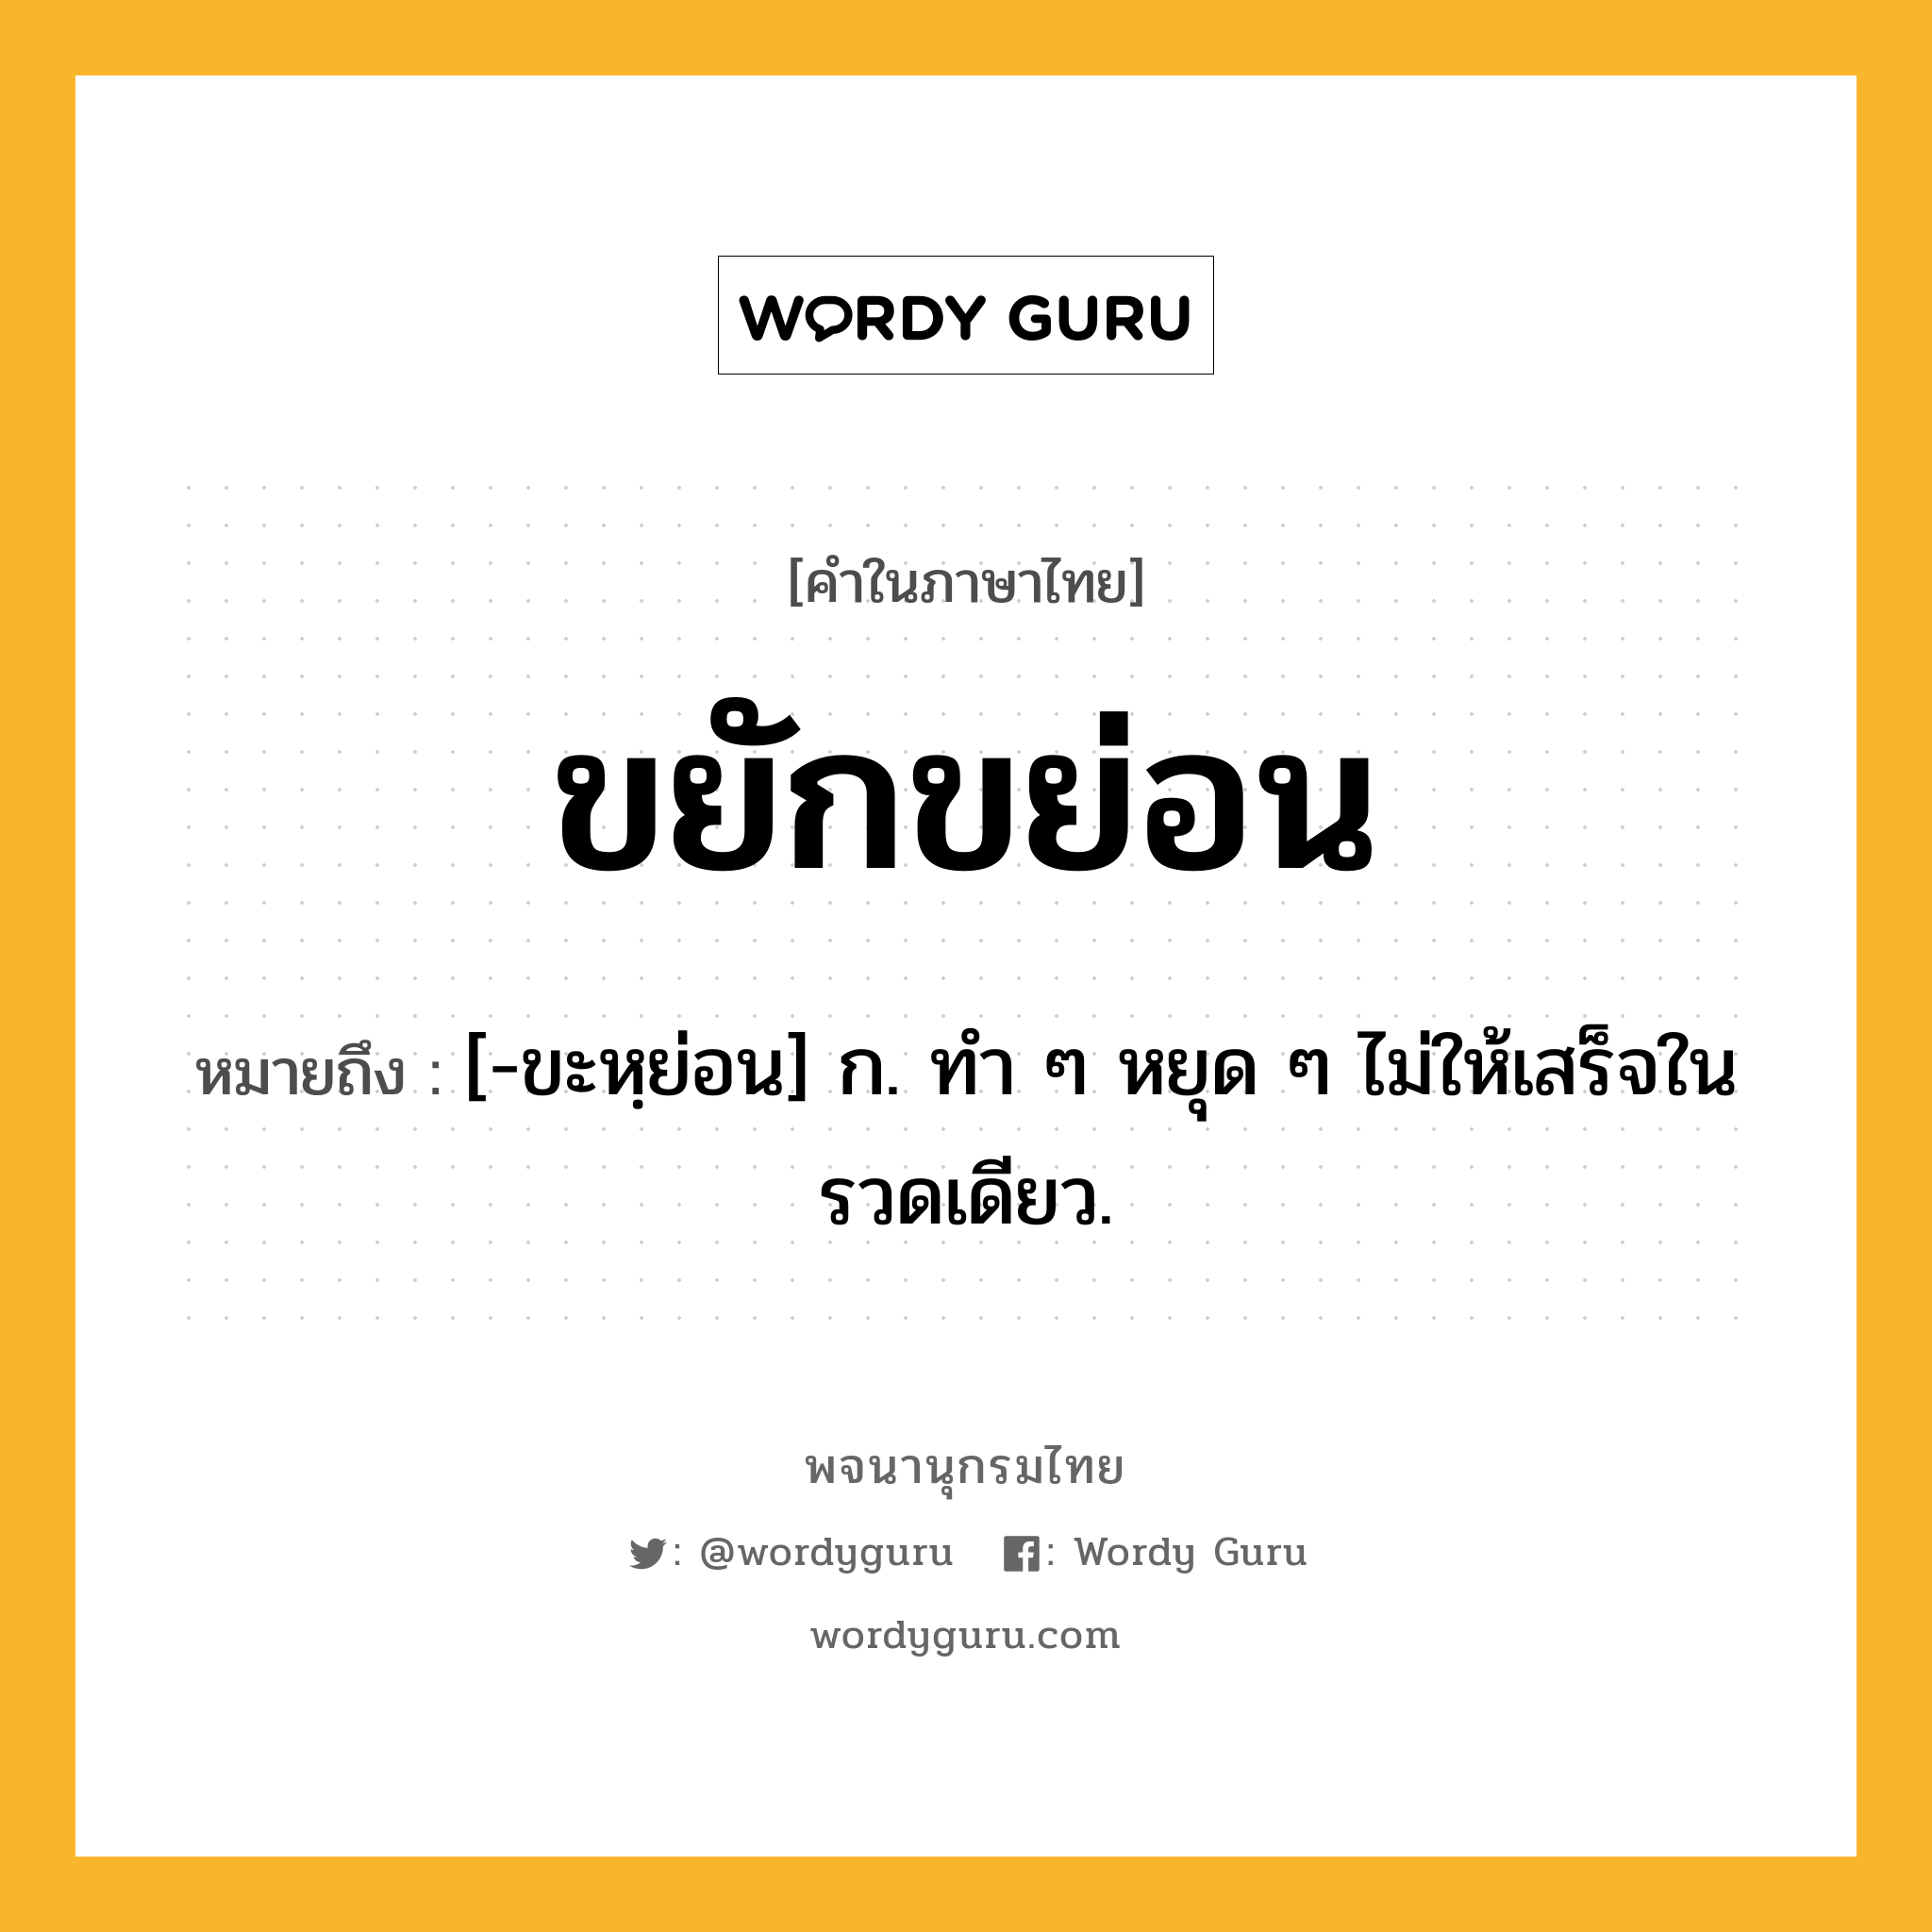 ขยักขย่อน ความหมาย หมายถึงอะไร?, คำในภาษาไทย ขยักขย่อน หมายถึง [-ขะหฺย่อน] ก. ทํา ๆ หยุด ๆ ไม่ให้เสร็จในรวดเดียว.